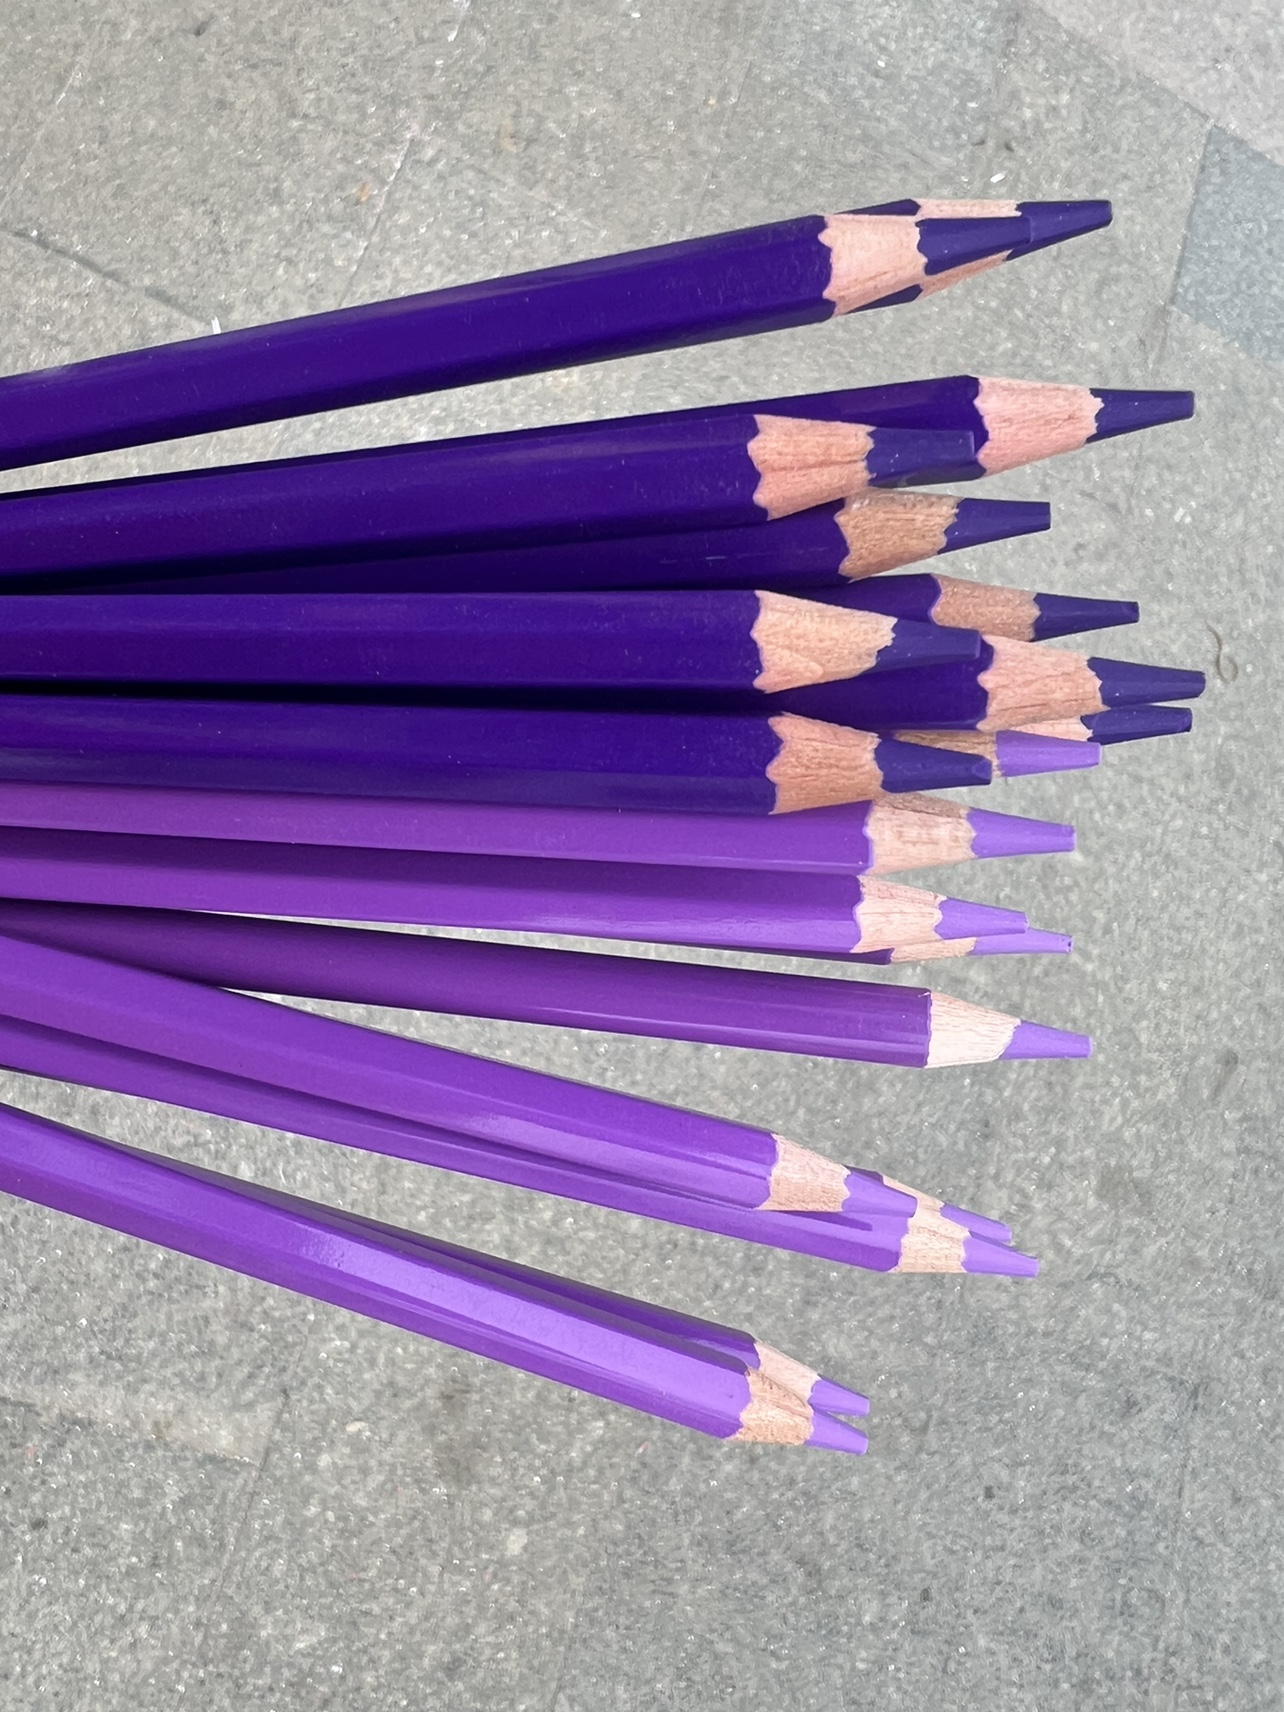 20只图上两种紫色混合进口油性超软芯涂色填色绘画彩铅笔